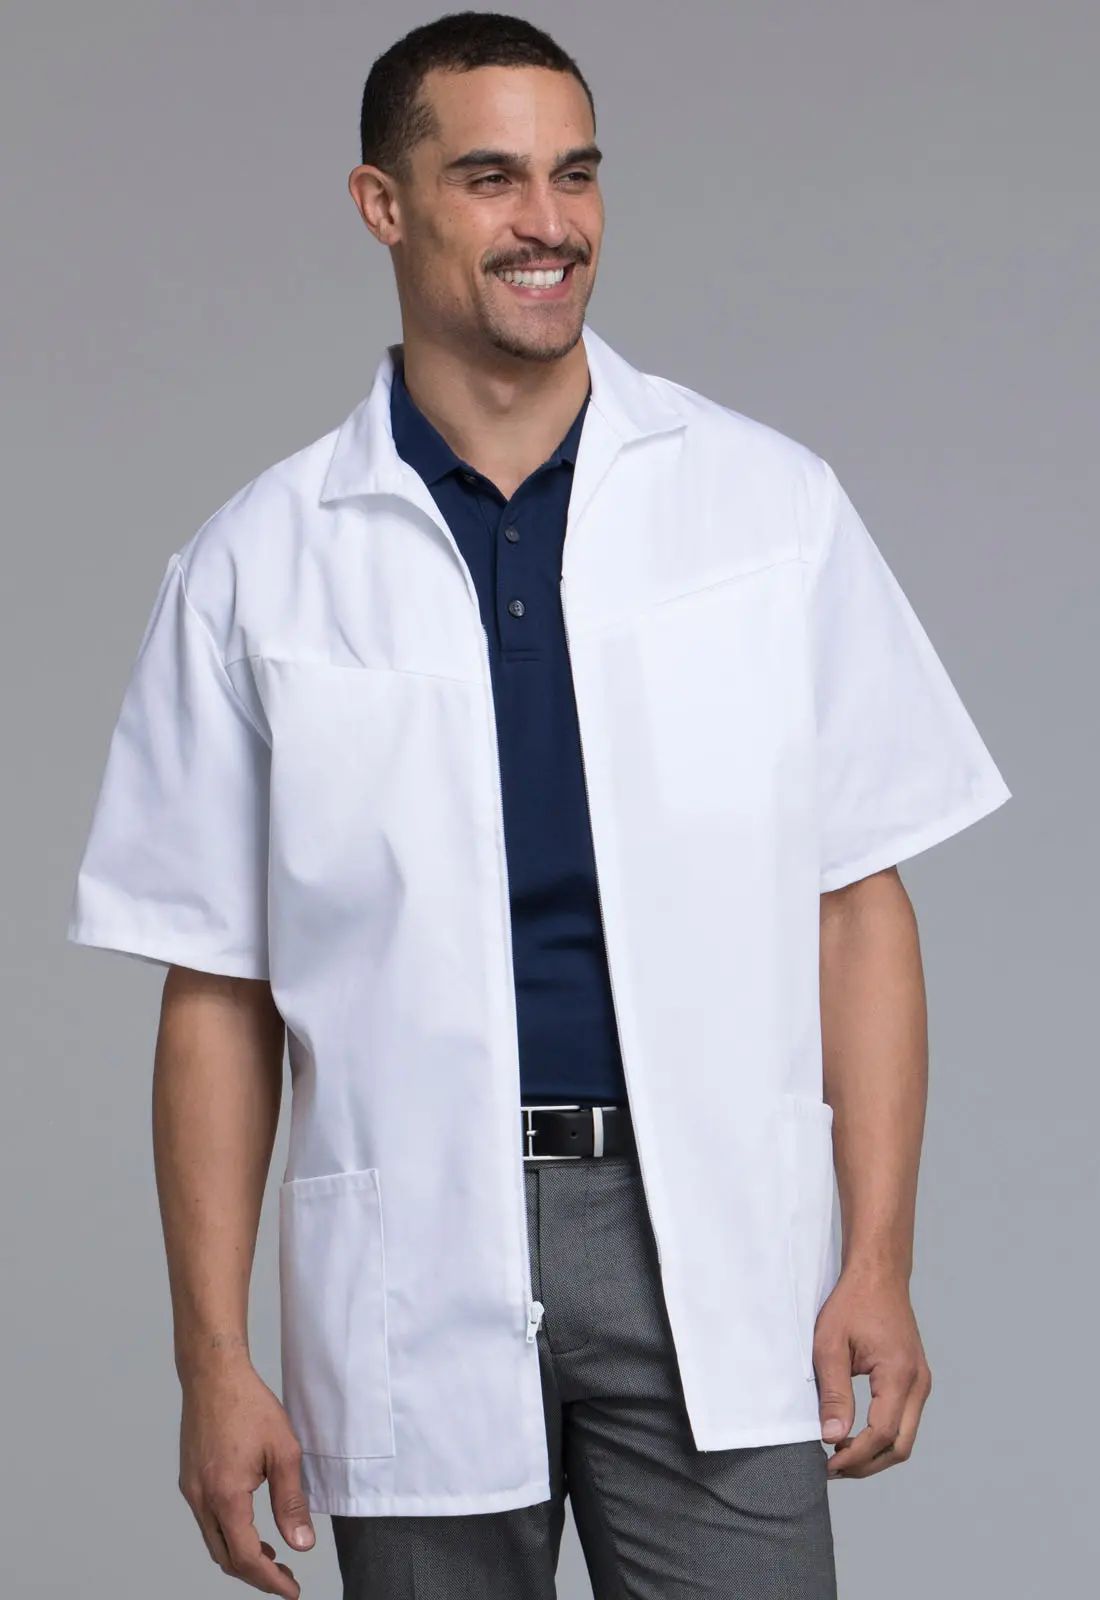 Med-Man Men's Zip Front Jacket